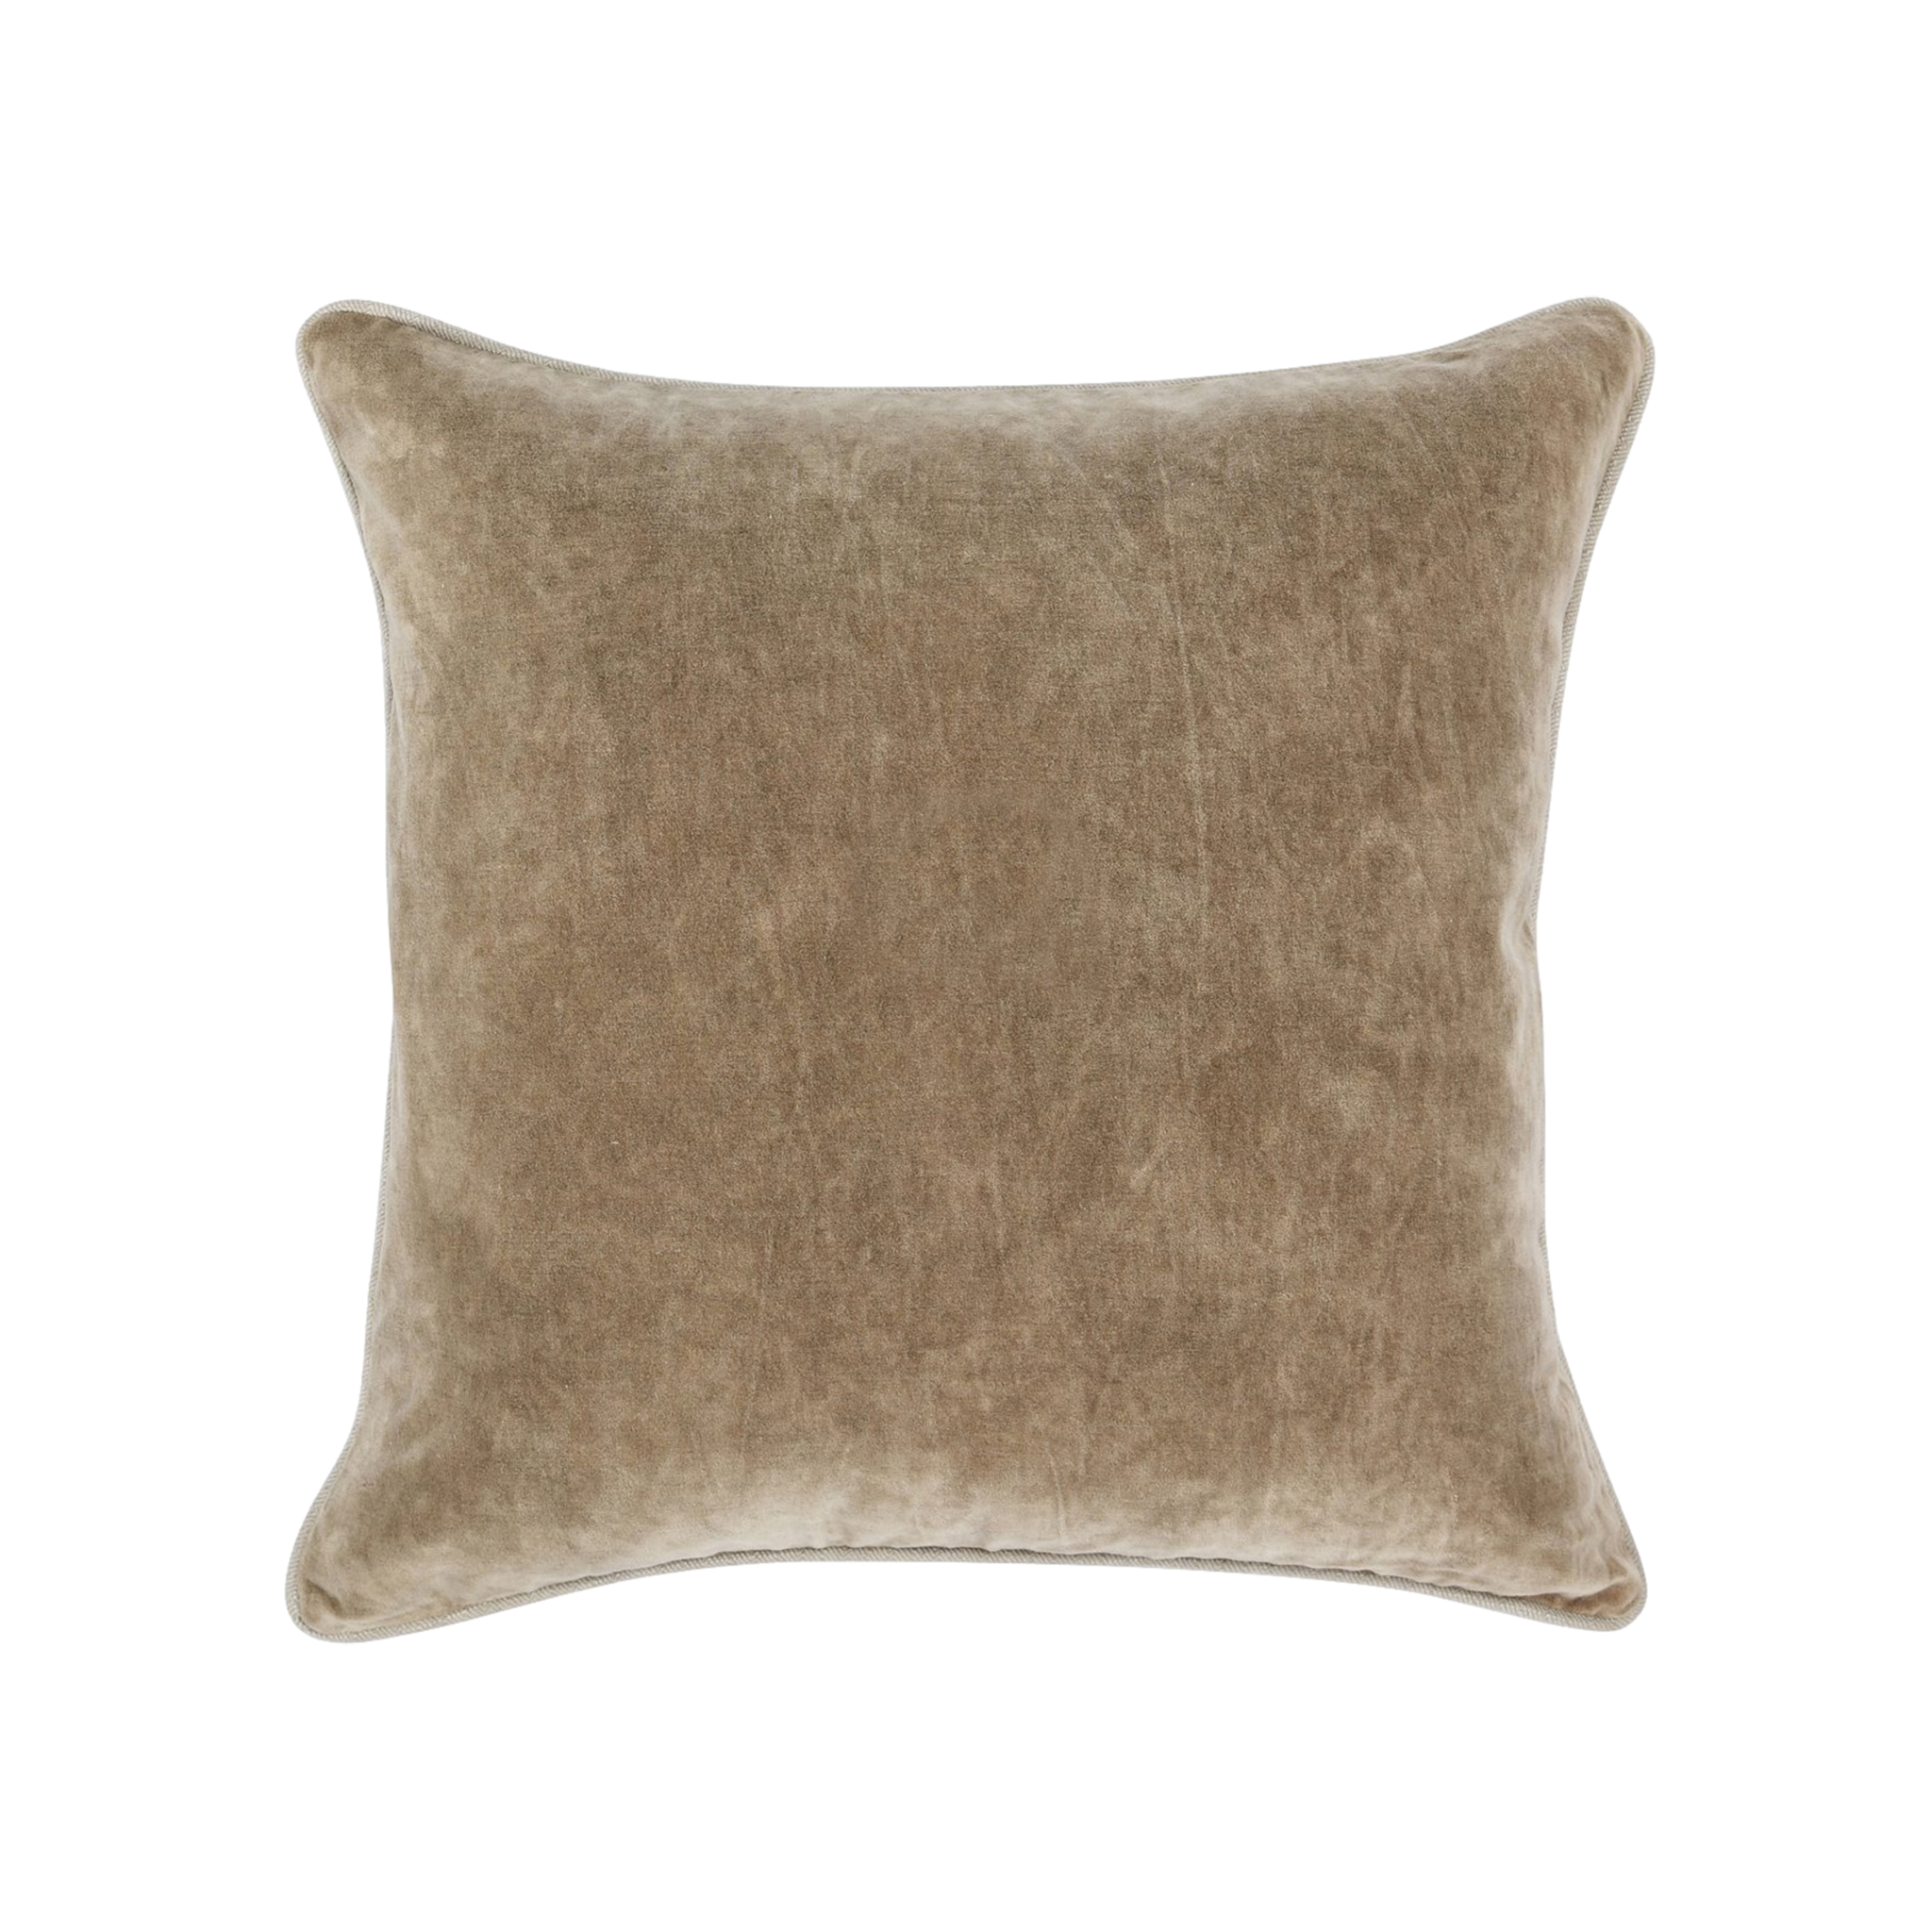 Heirloom Velvet Pillow (Wheat)